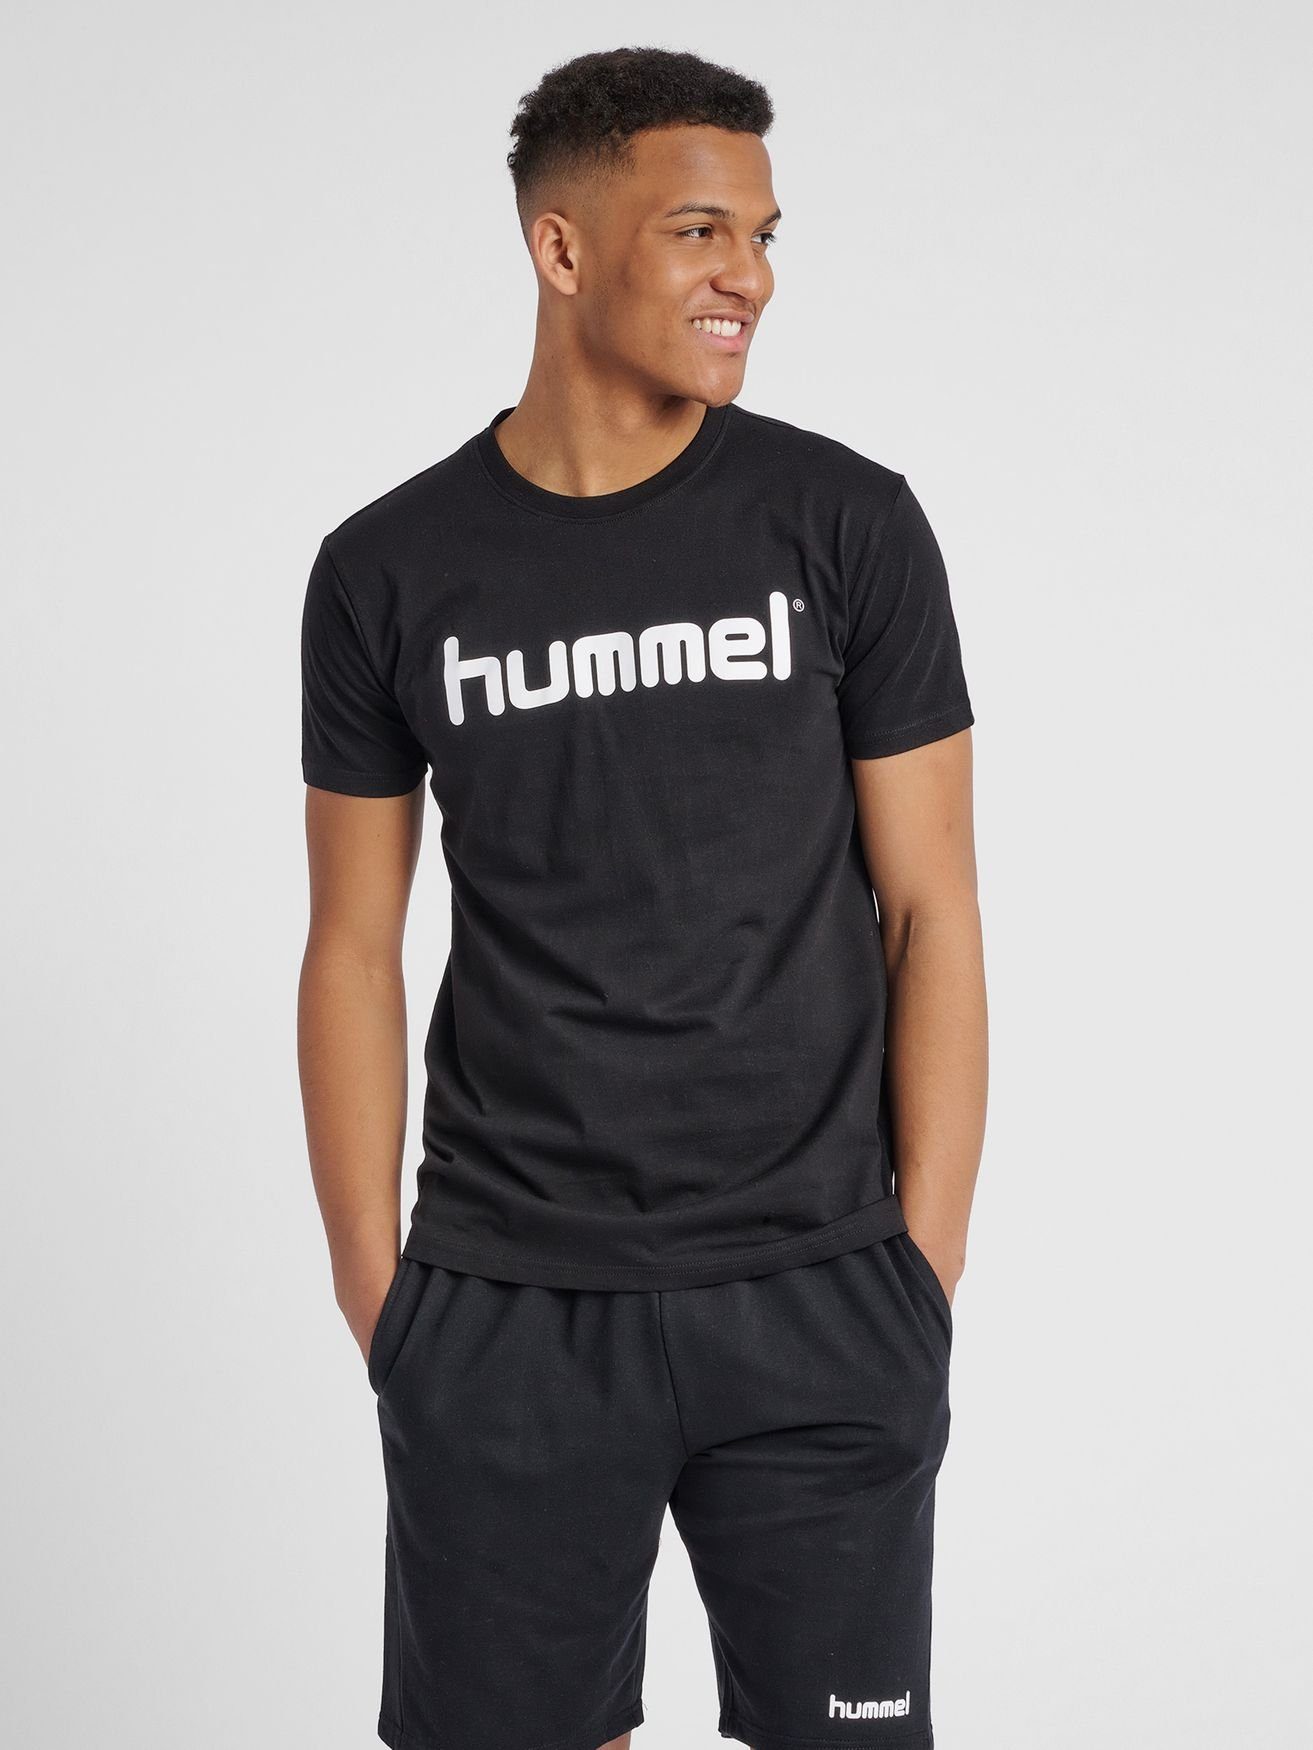 hummel T-Shirt Logo T-Shirt Sport Kurzarm Rundhals Shirt aus Baumwolle HMLGO 5125 in Schwarz